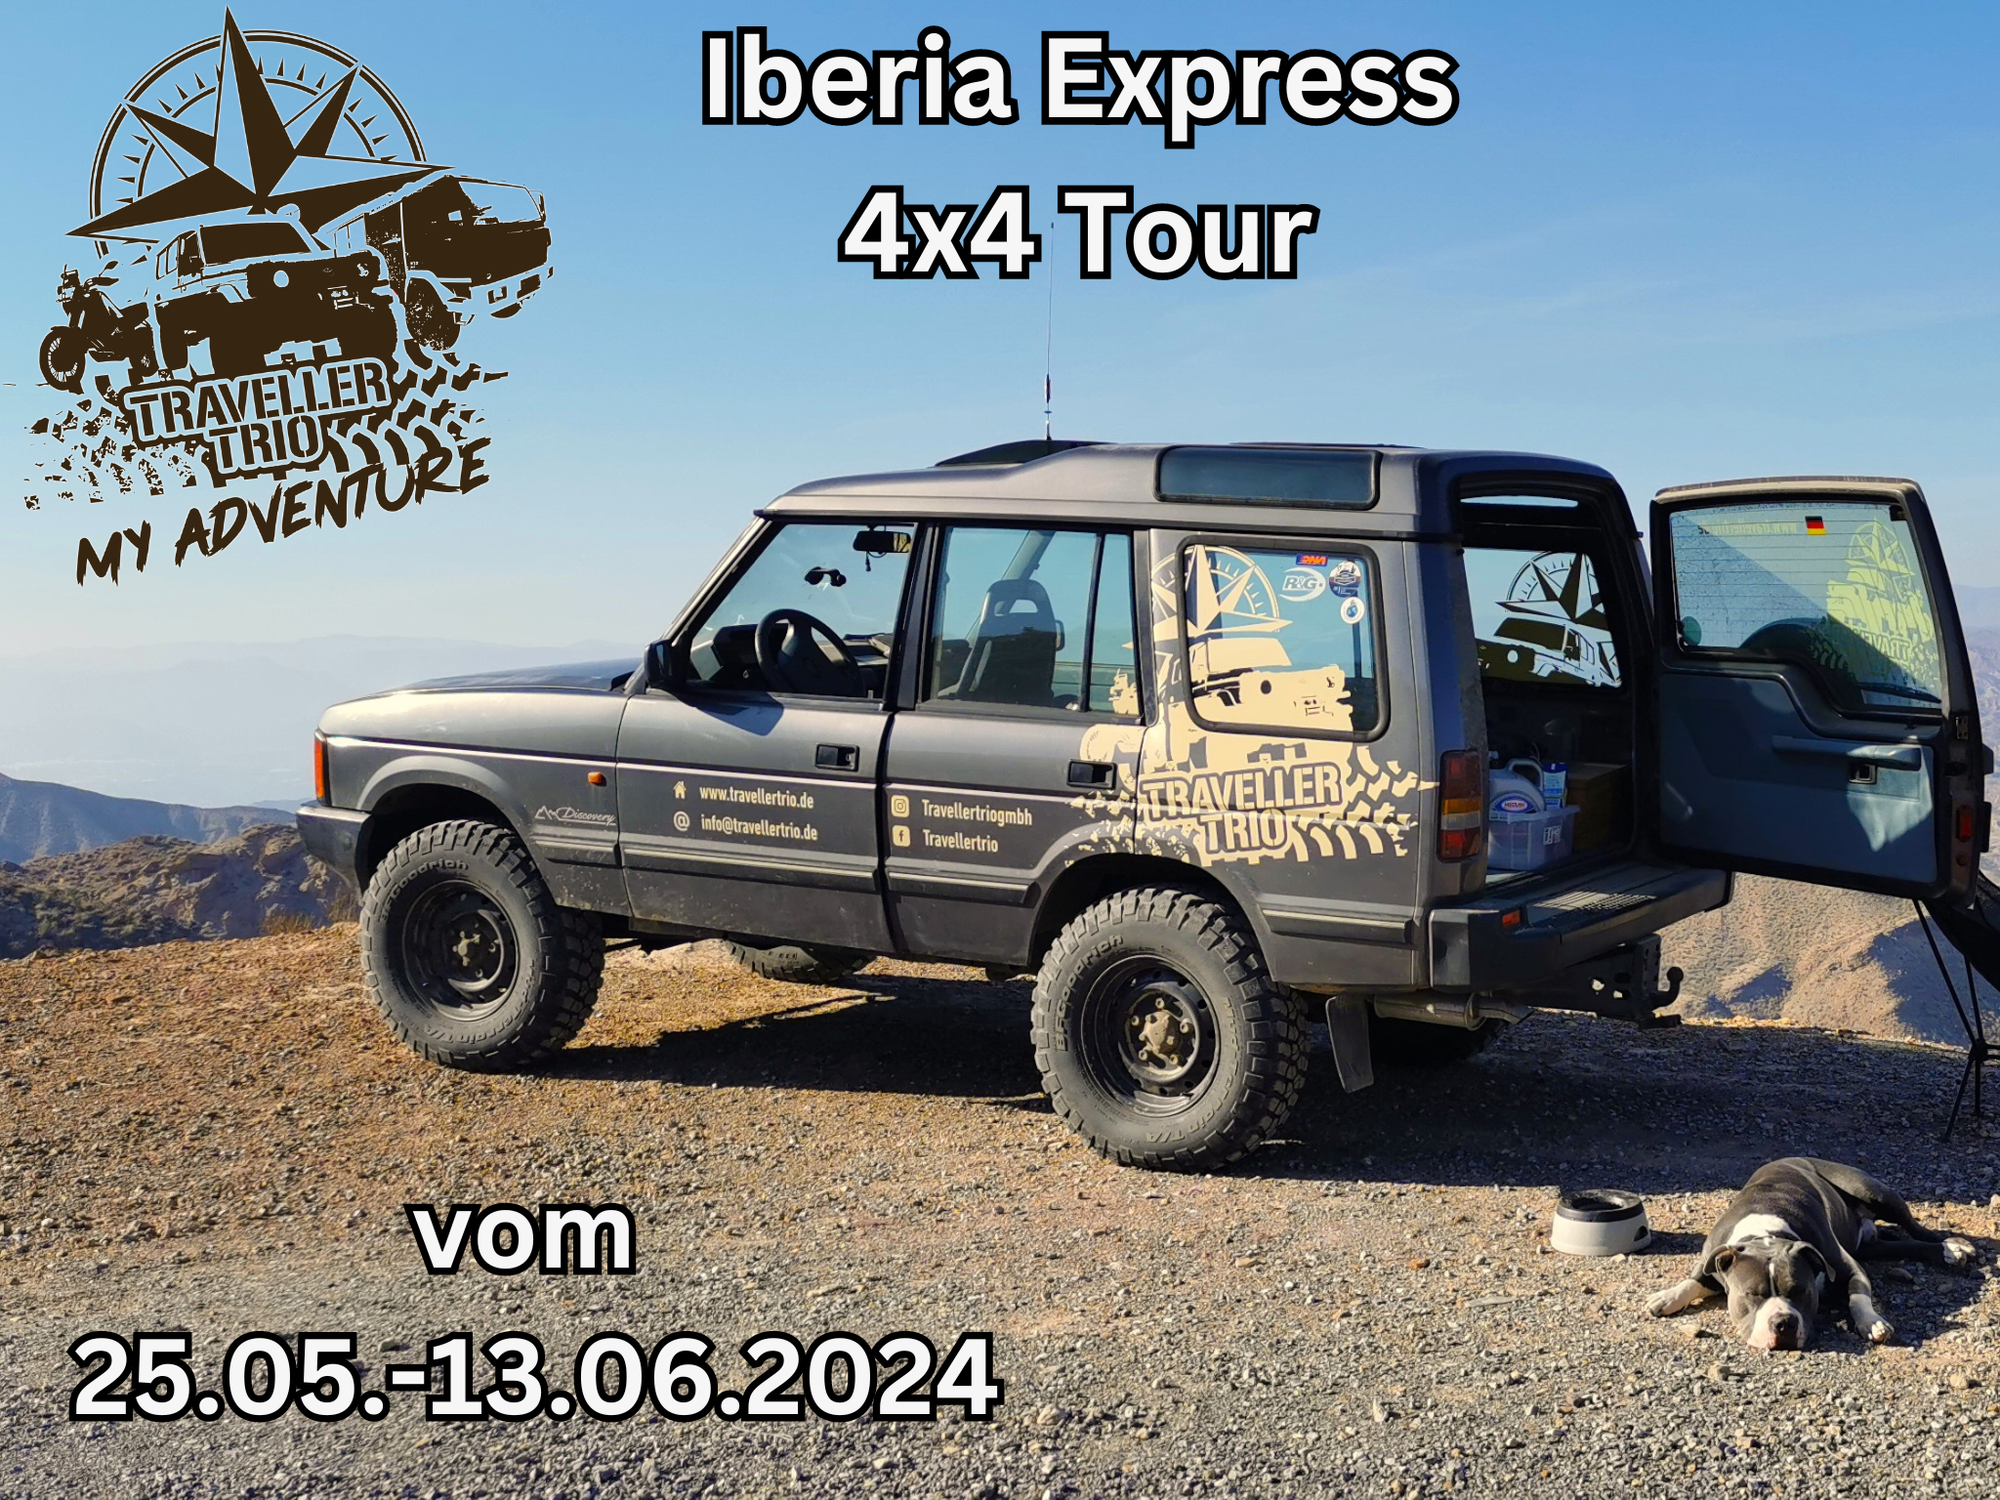 Iberia Express 4x4 Tour vom 26.05.-13.06.